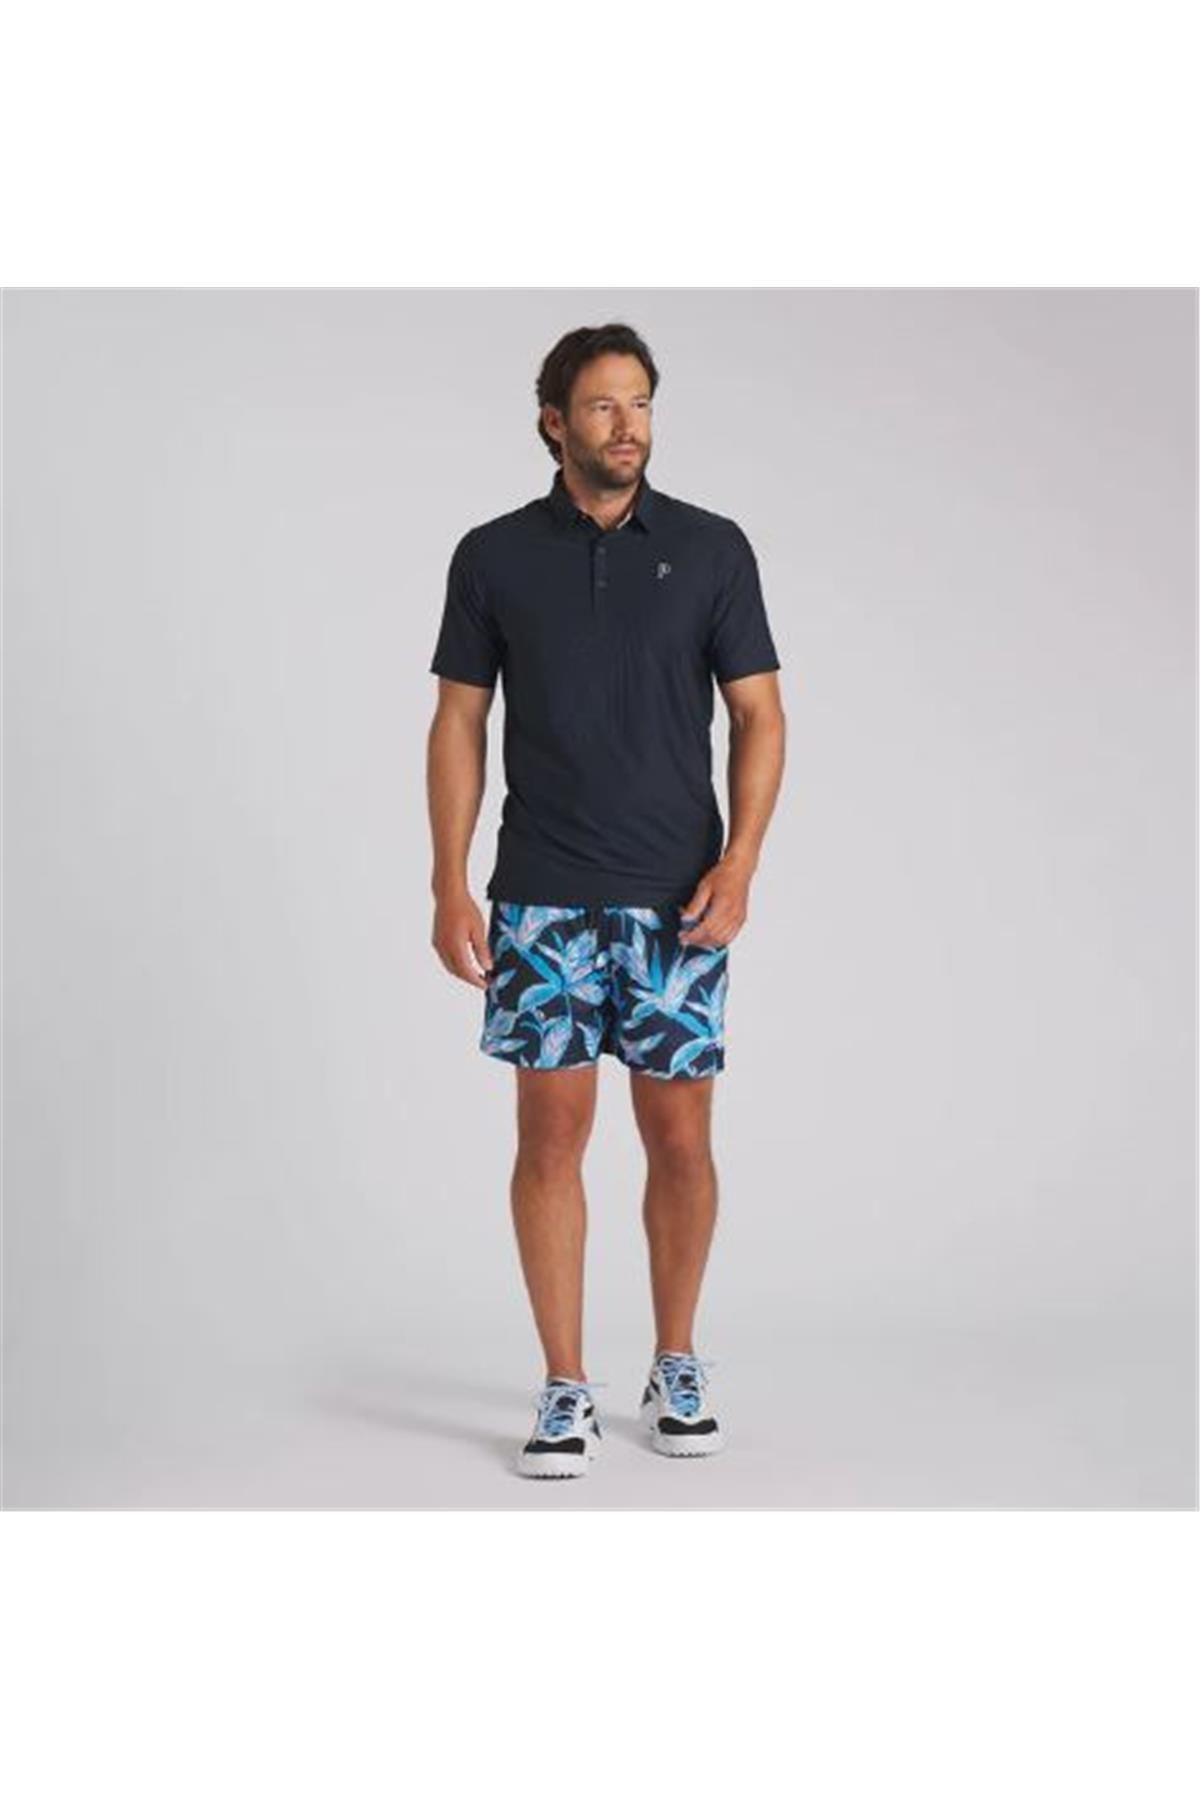 Puma x PTC Jacquard Polo Tshirt / Erkek Baskılı Golf Tshirt